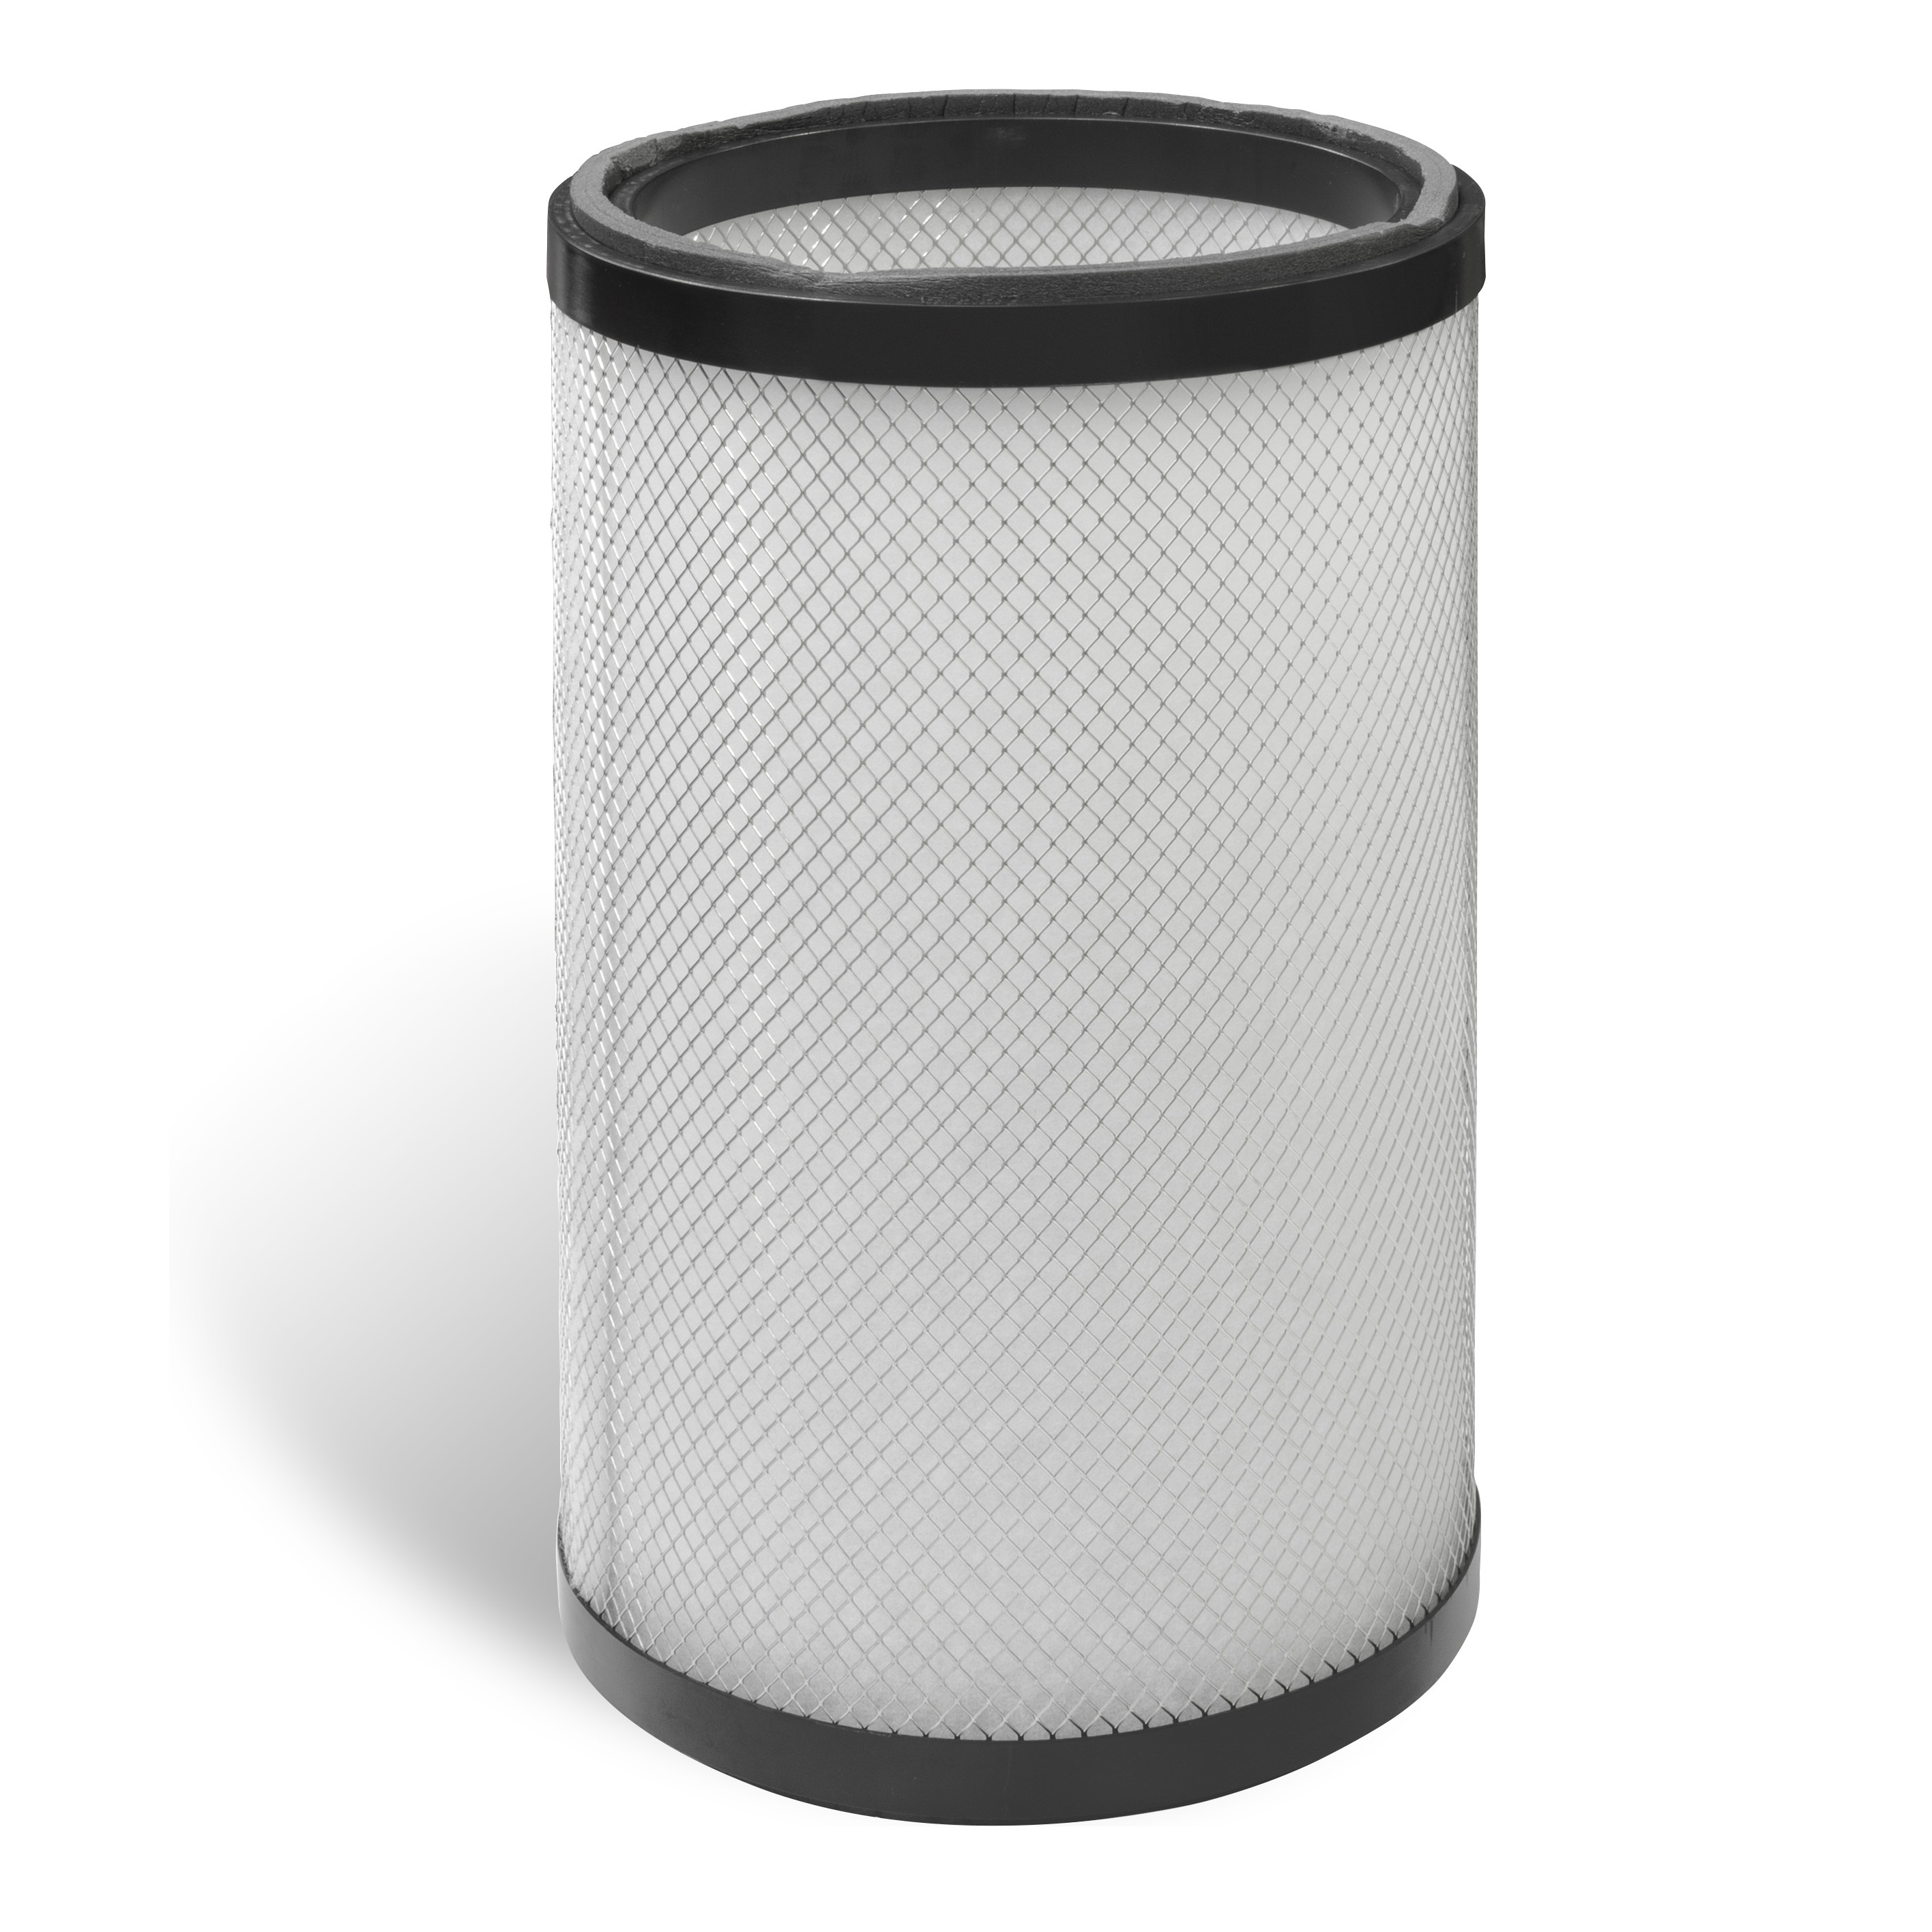 Cartuccia filtro aria Robuschi per soffiante a vite per Robox WS taglia 4, 3.5, 4.0